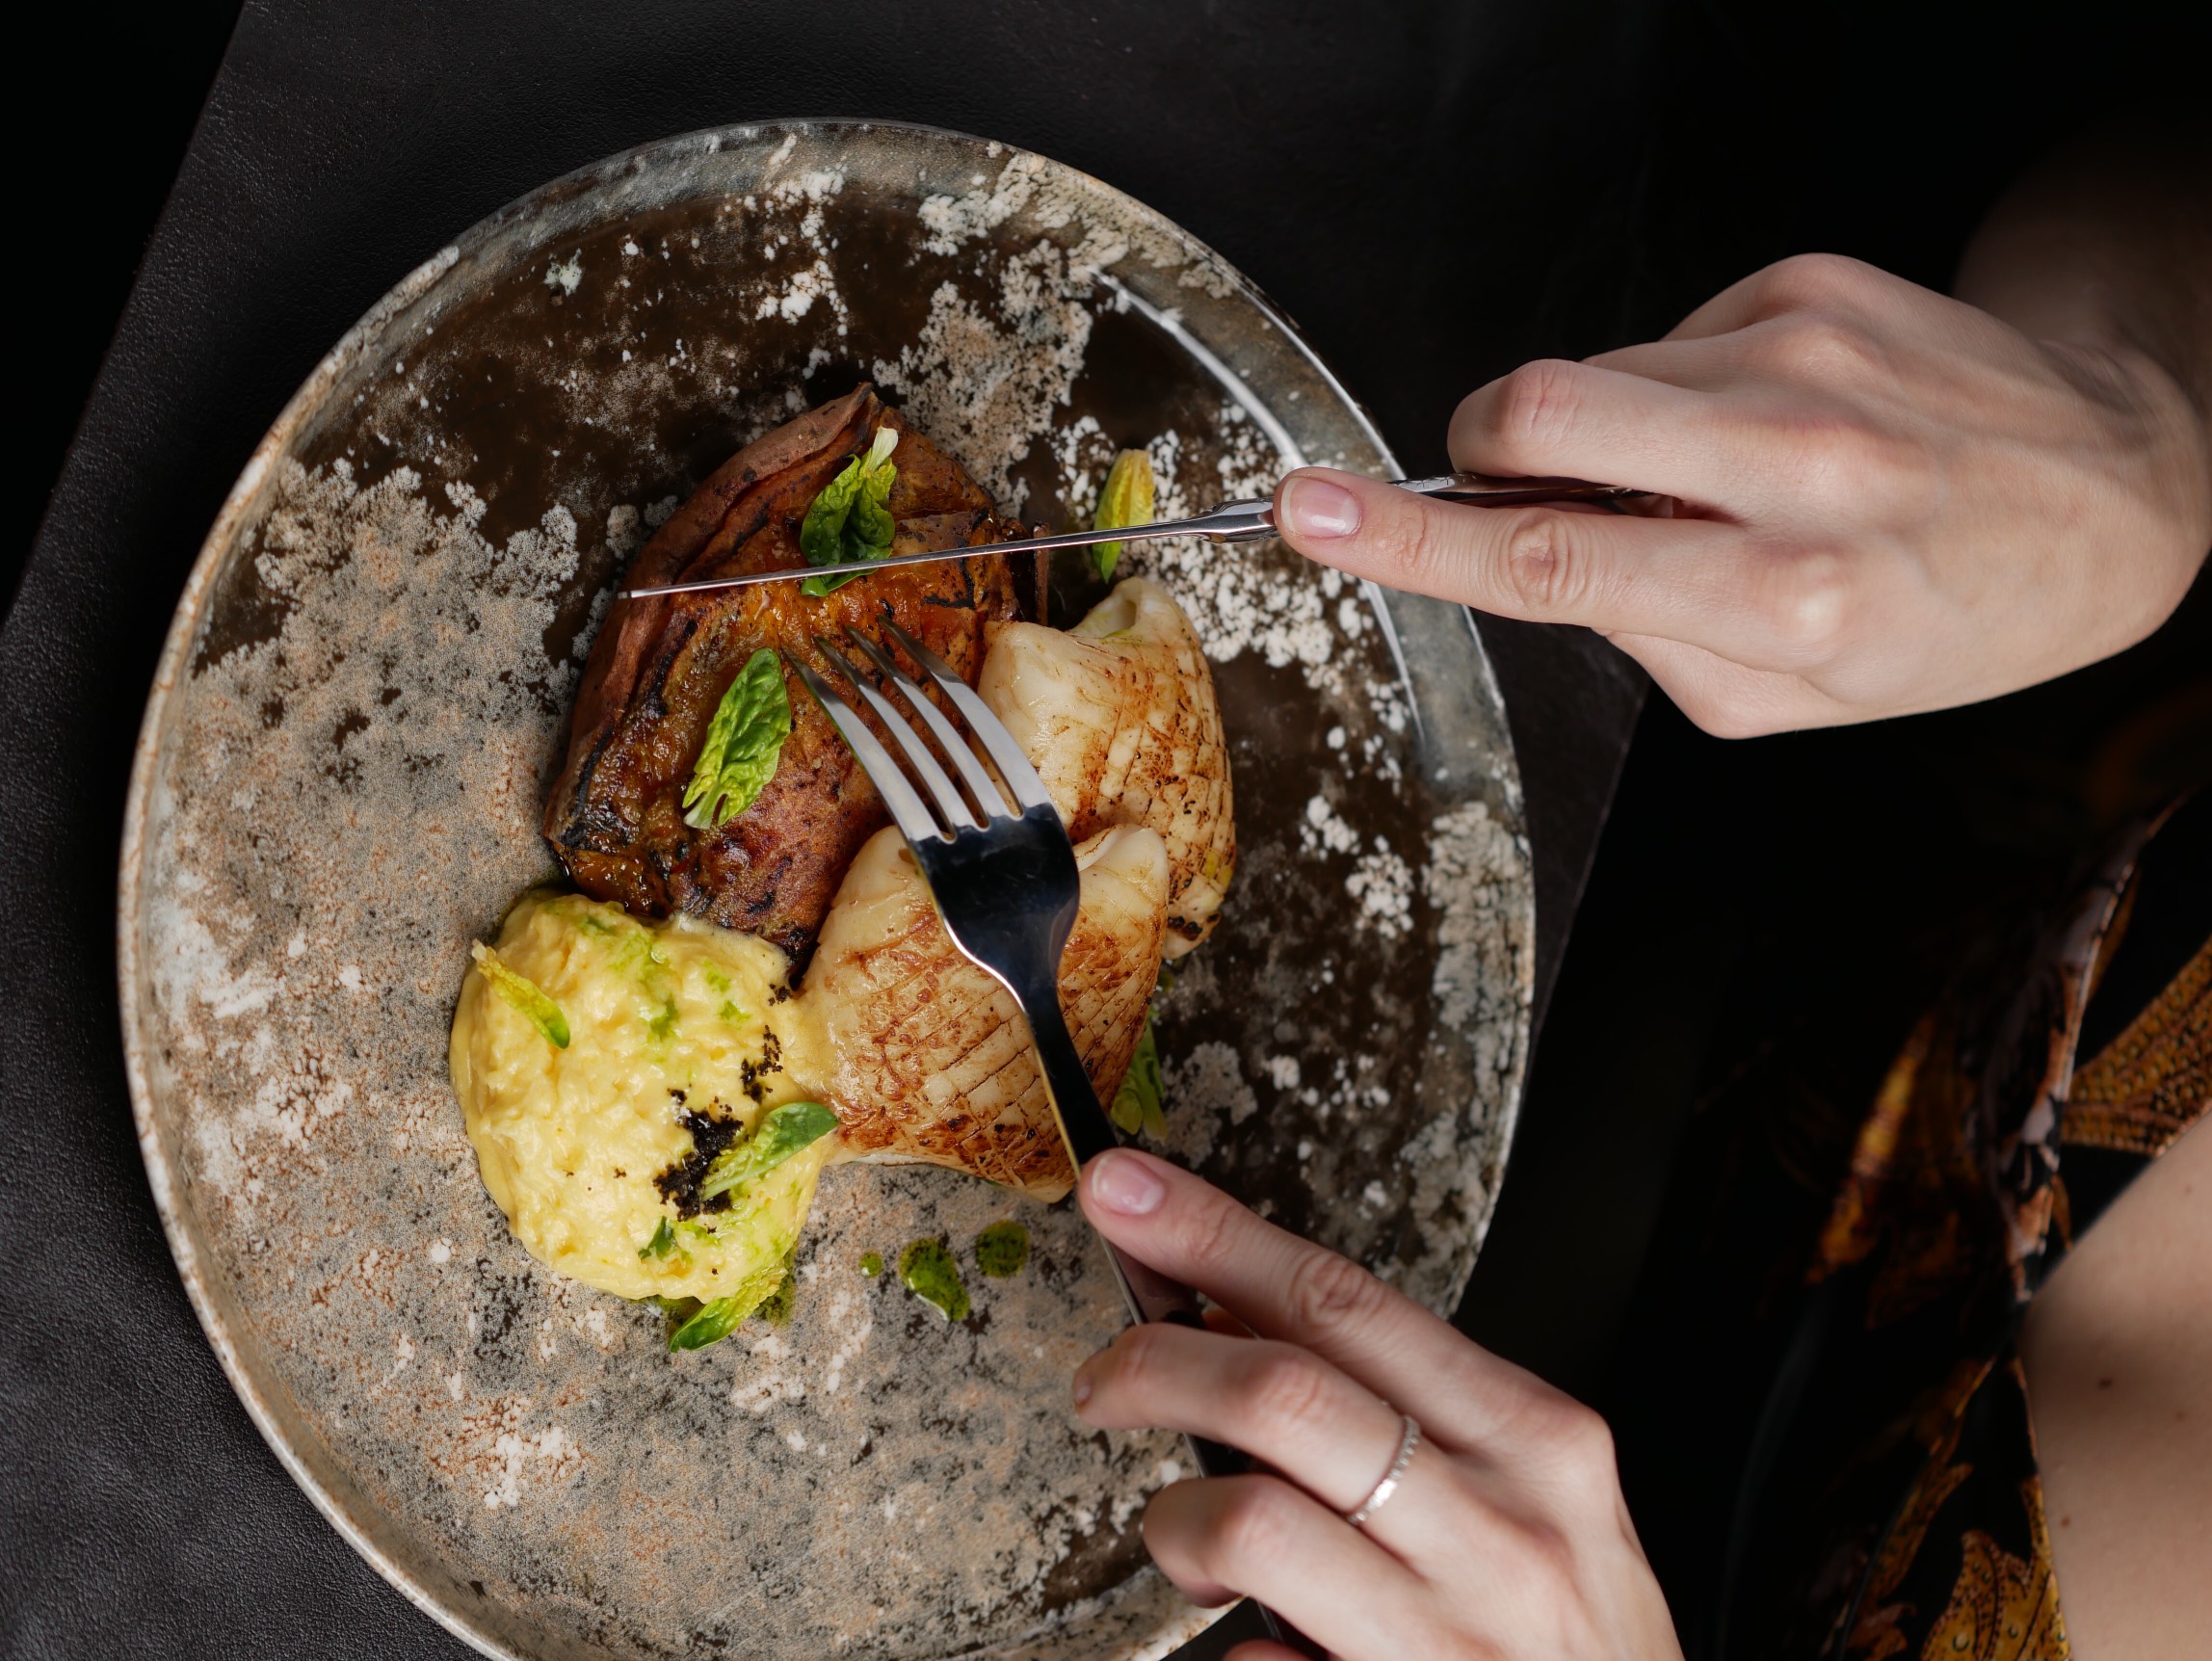 Кальмар с бататом с соусом берблан в ресторане Море и Мясо в Красной поляне (Сочи).